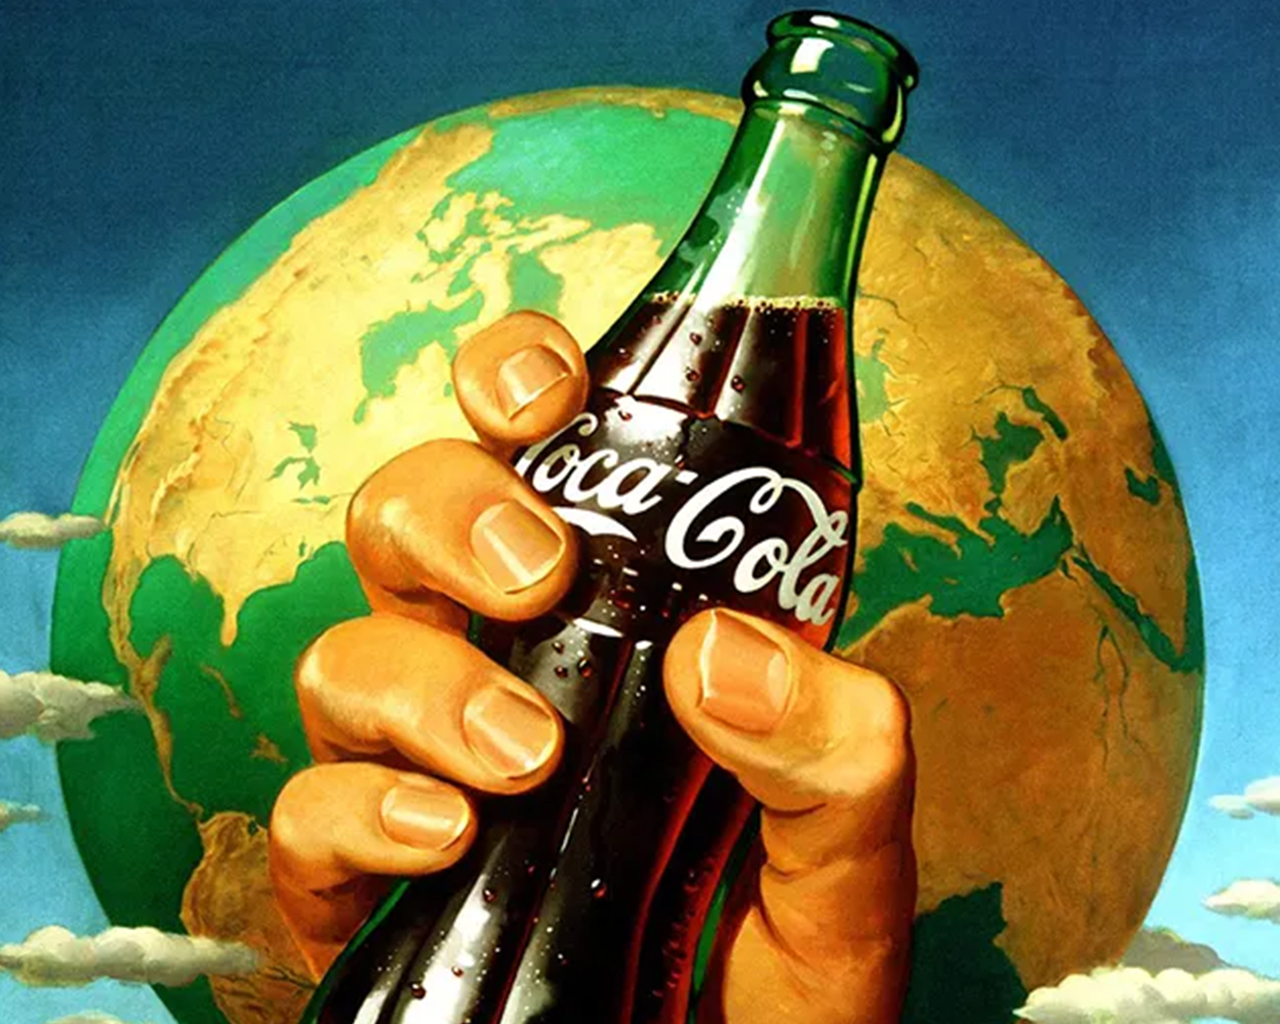 vieille annonce publicitaire d’une main tenant une bouteille de coca-cola devant un globe du monde